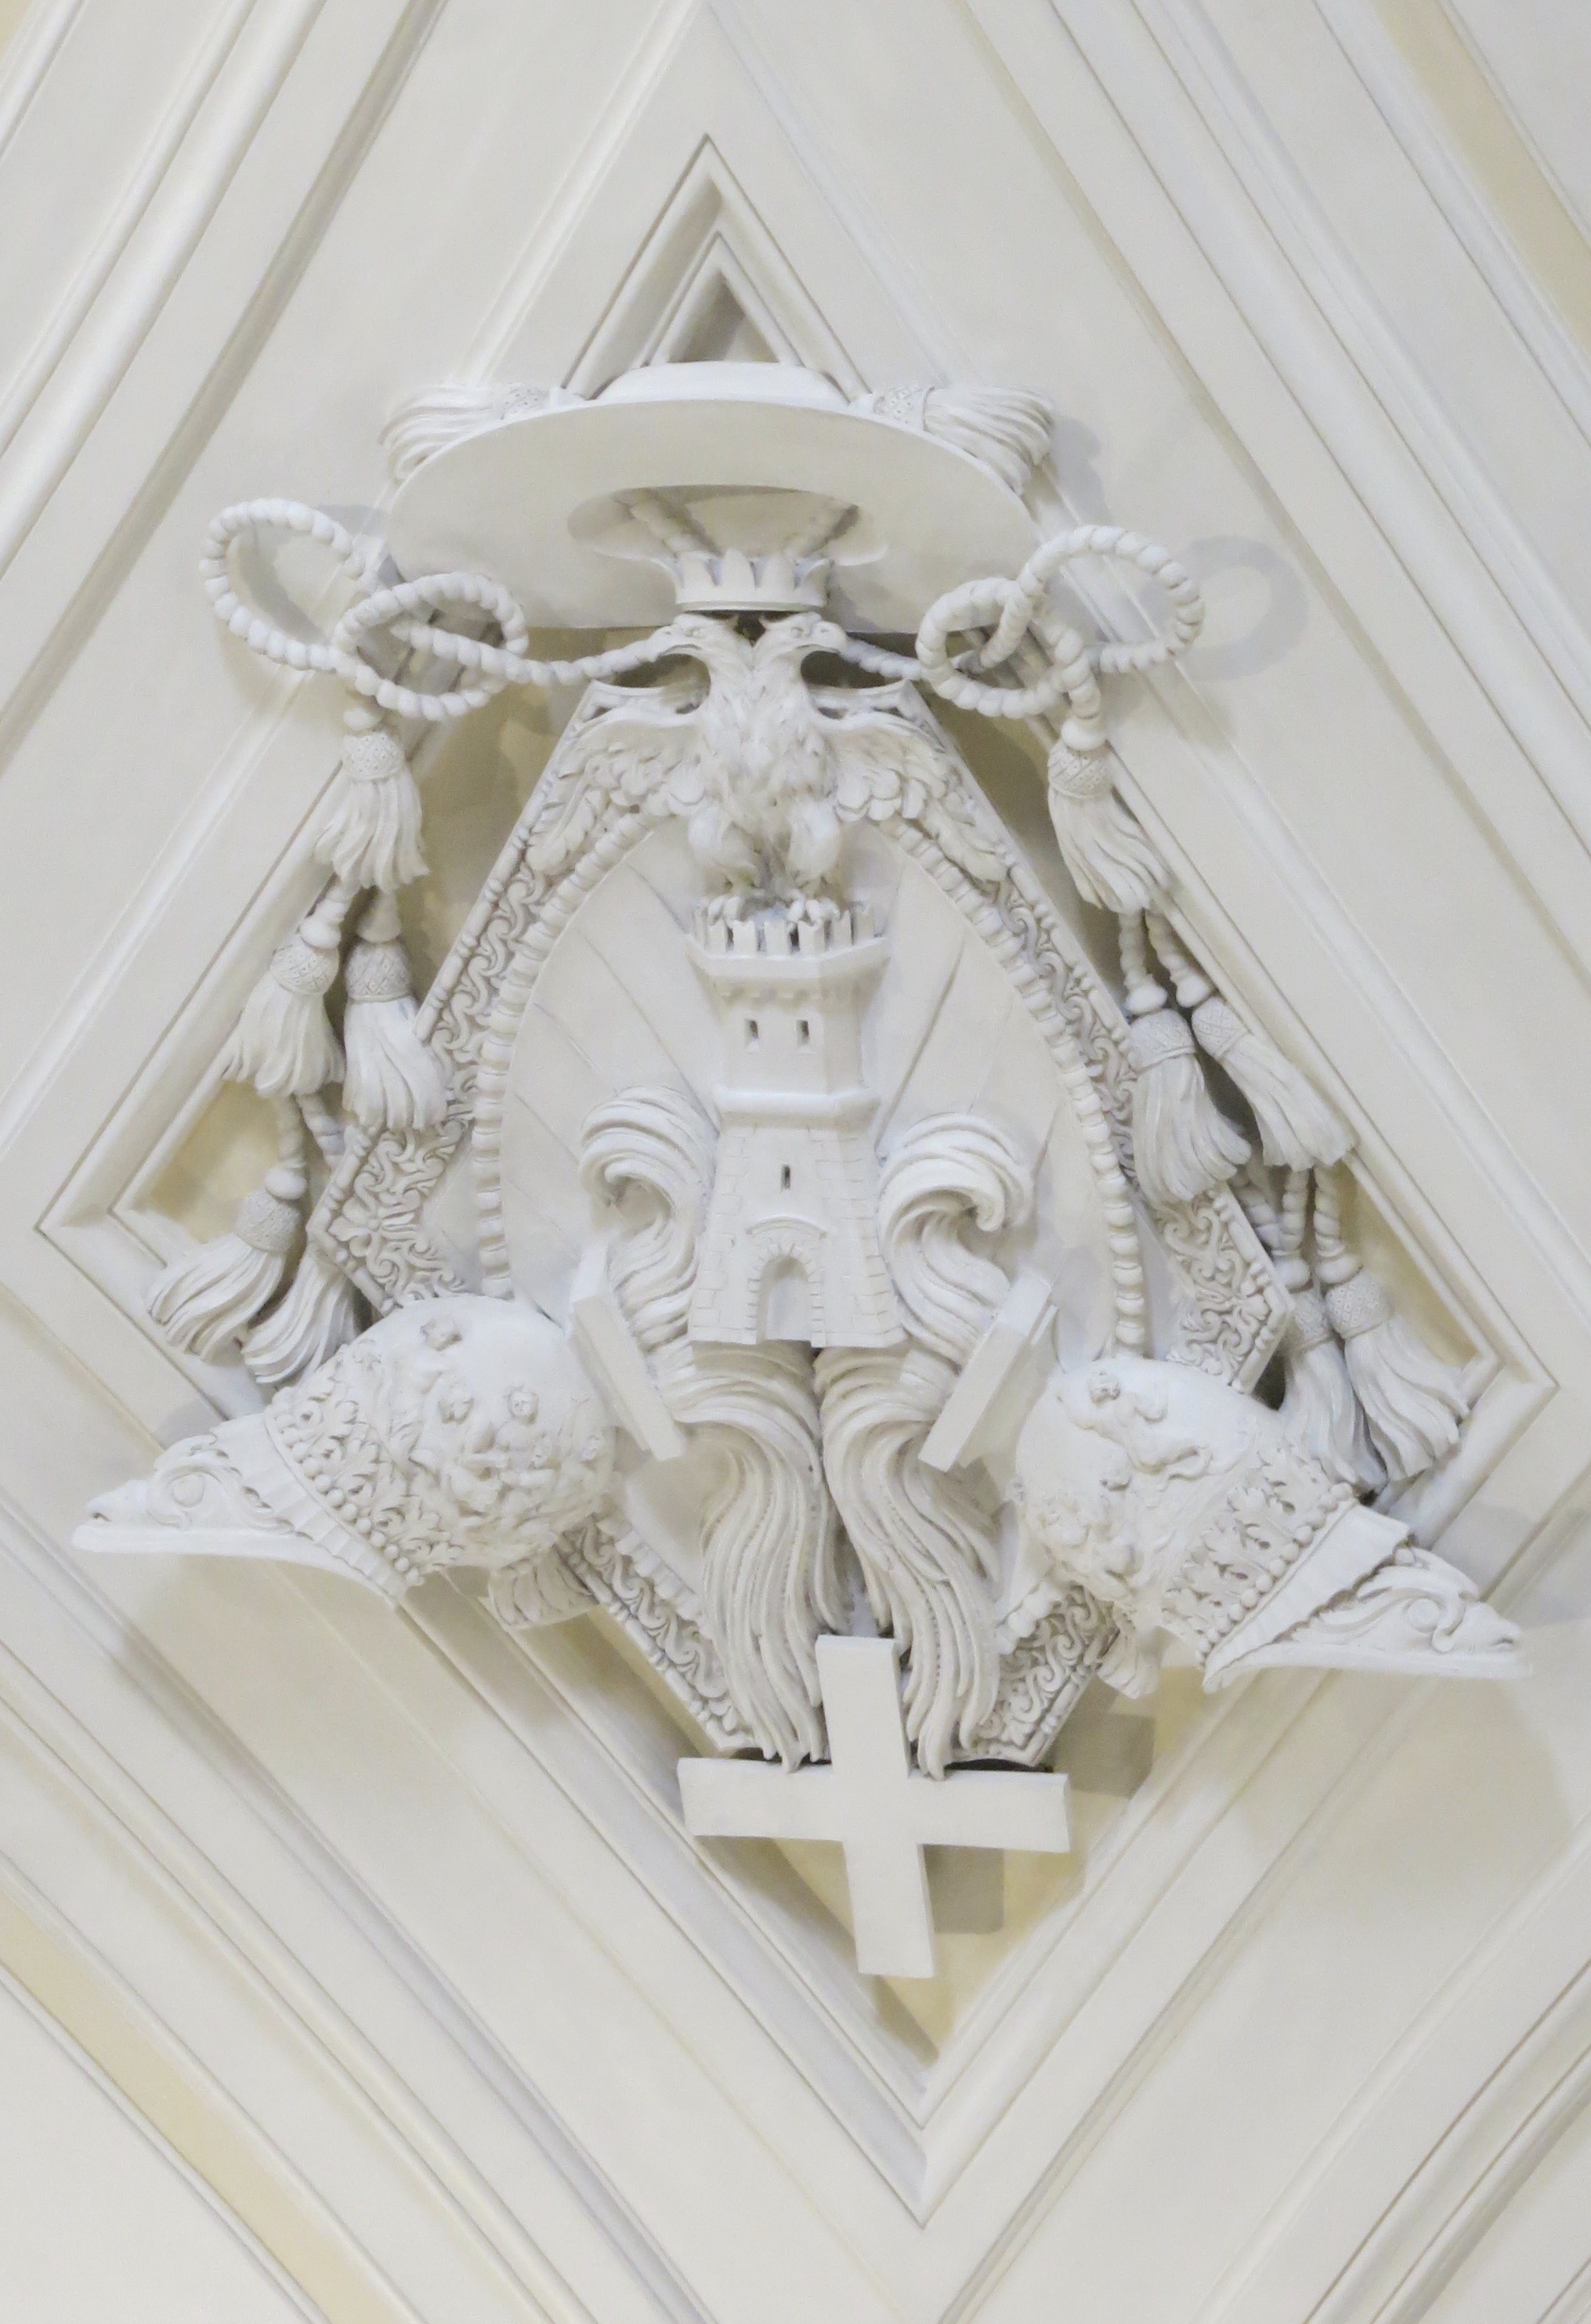 Fotografie der Wappenkartusche in Santa Maria del Priorato in Rom.